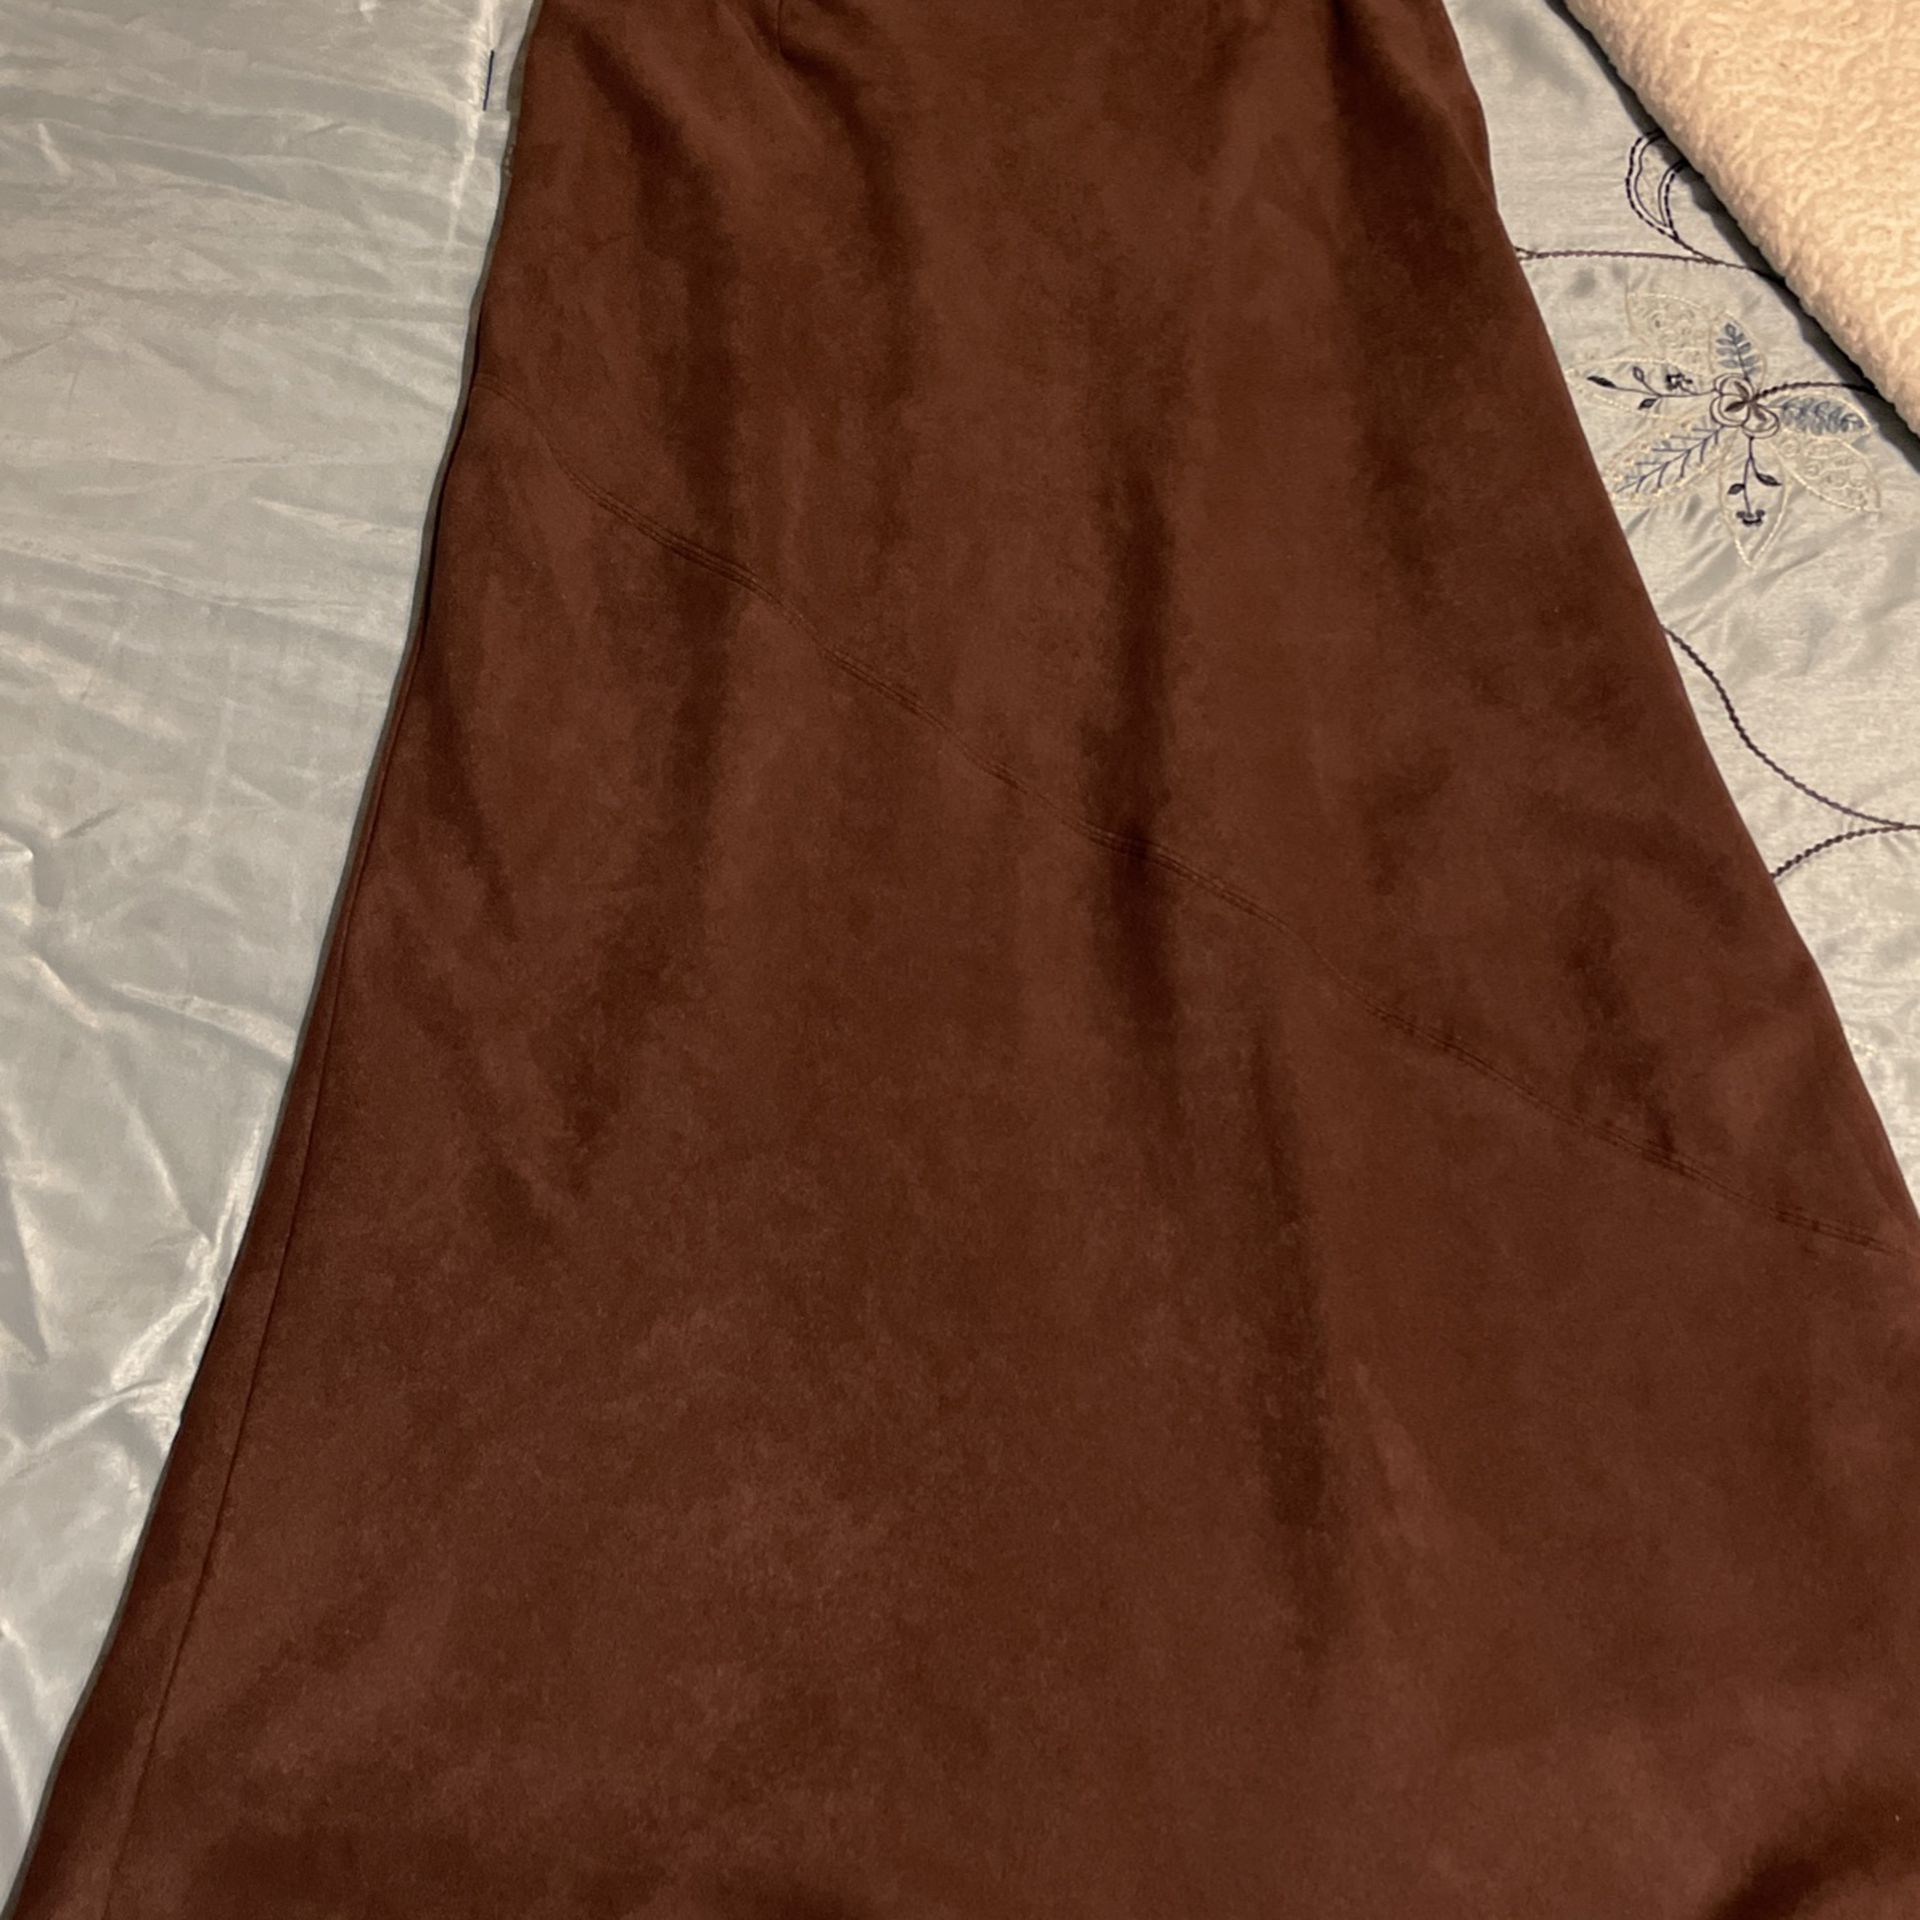 Chocolate Brown Worthington Petite 12p Skirt 